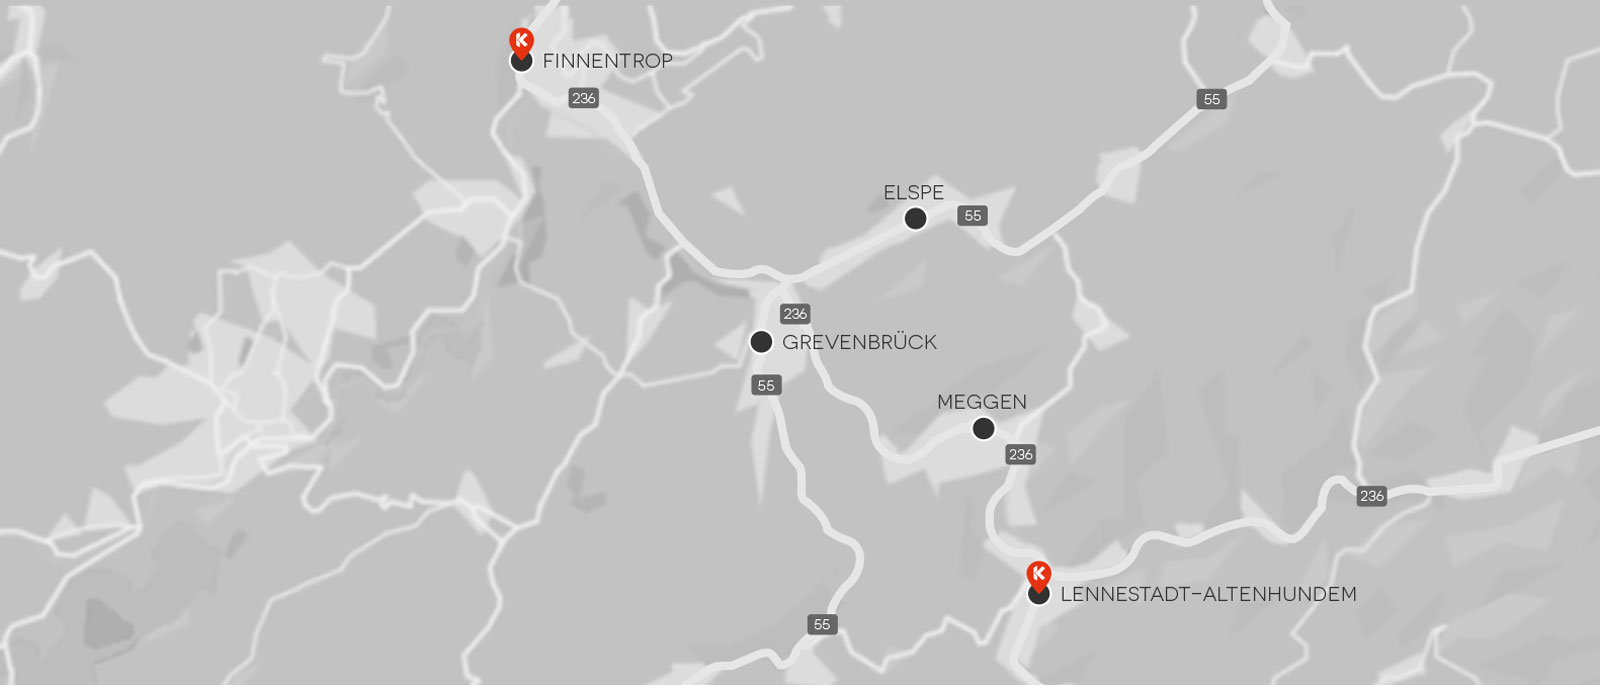 Die Karte mit den beiden Standorte in Finnentrop und Lennestadt